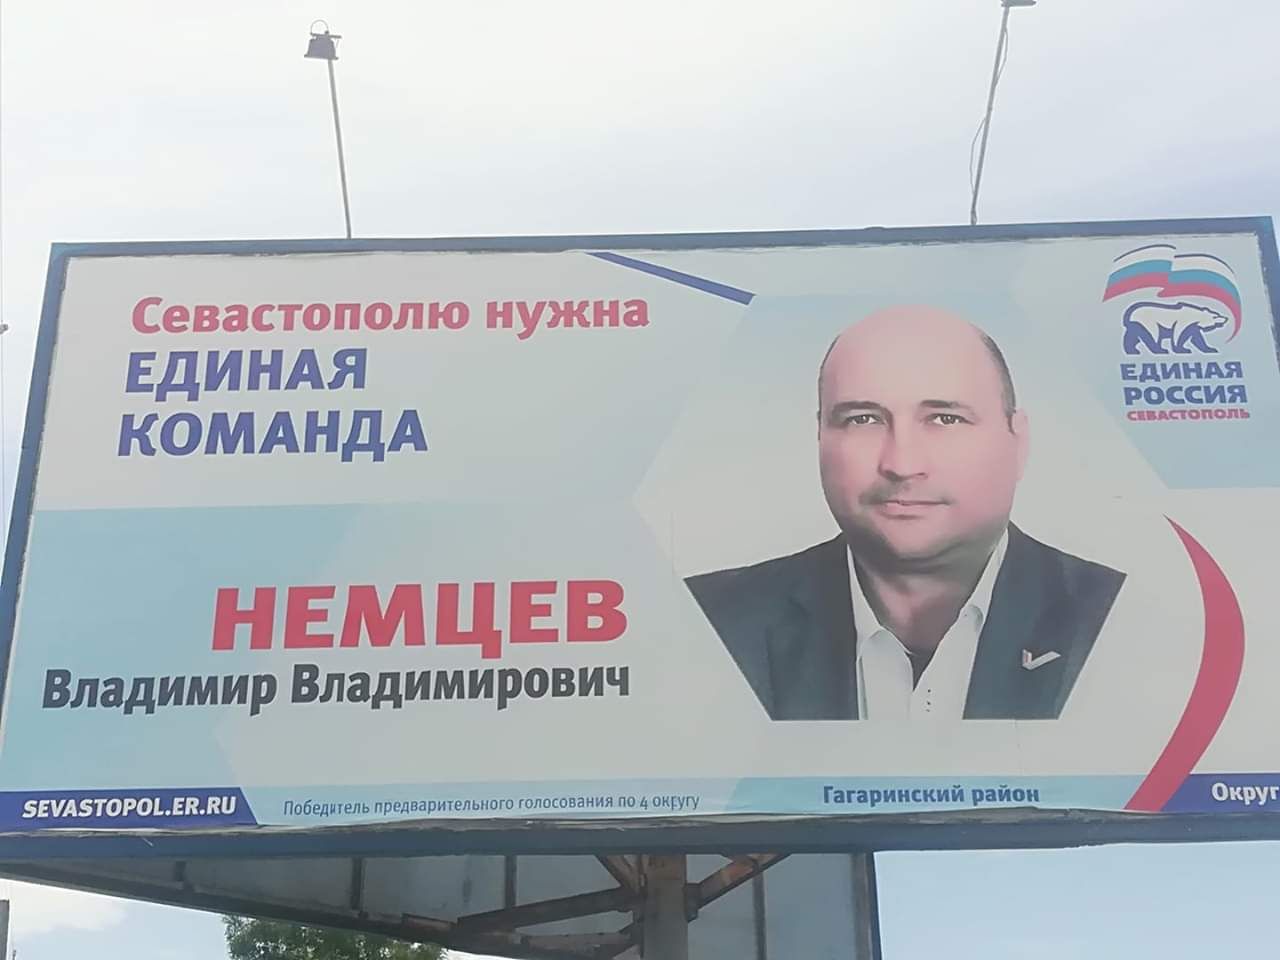 Смешные плакаты про единую Россию